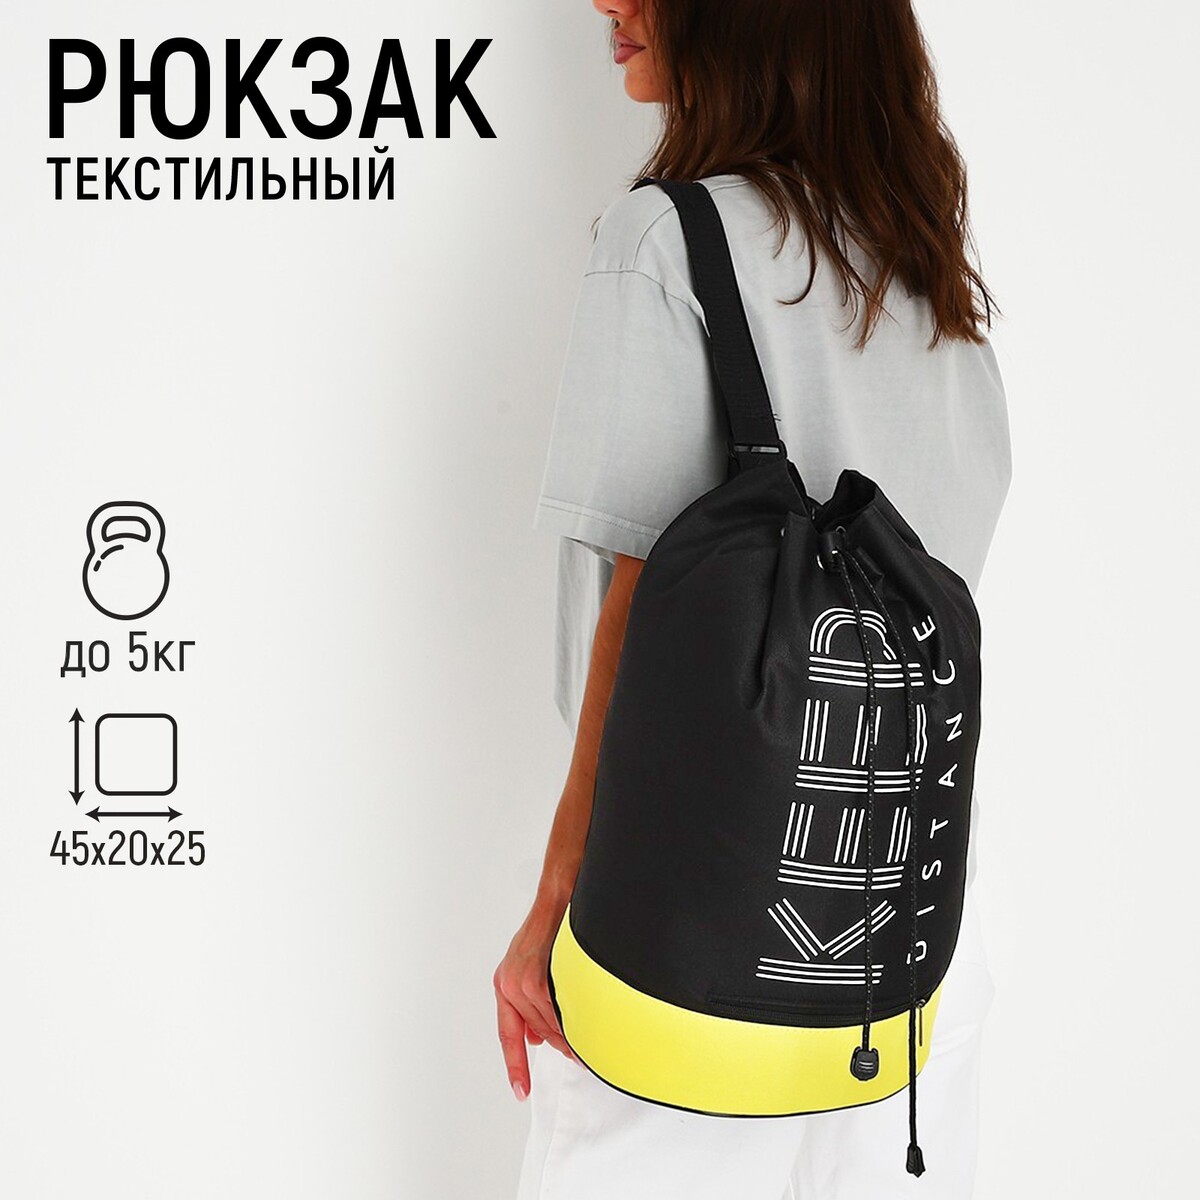 Рюкзак-торба молодежный, отдел на стяжке шнурком, цвет черный/желтый